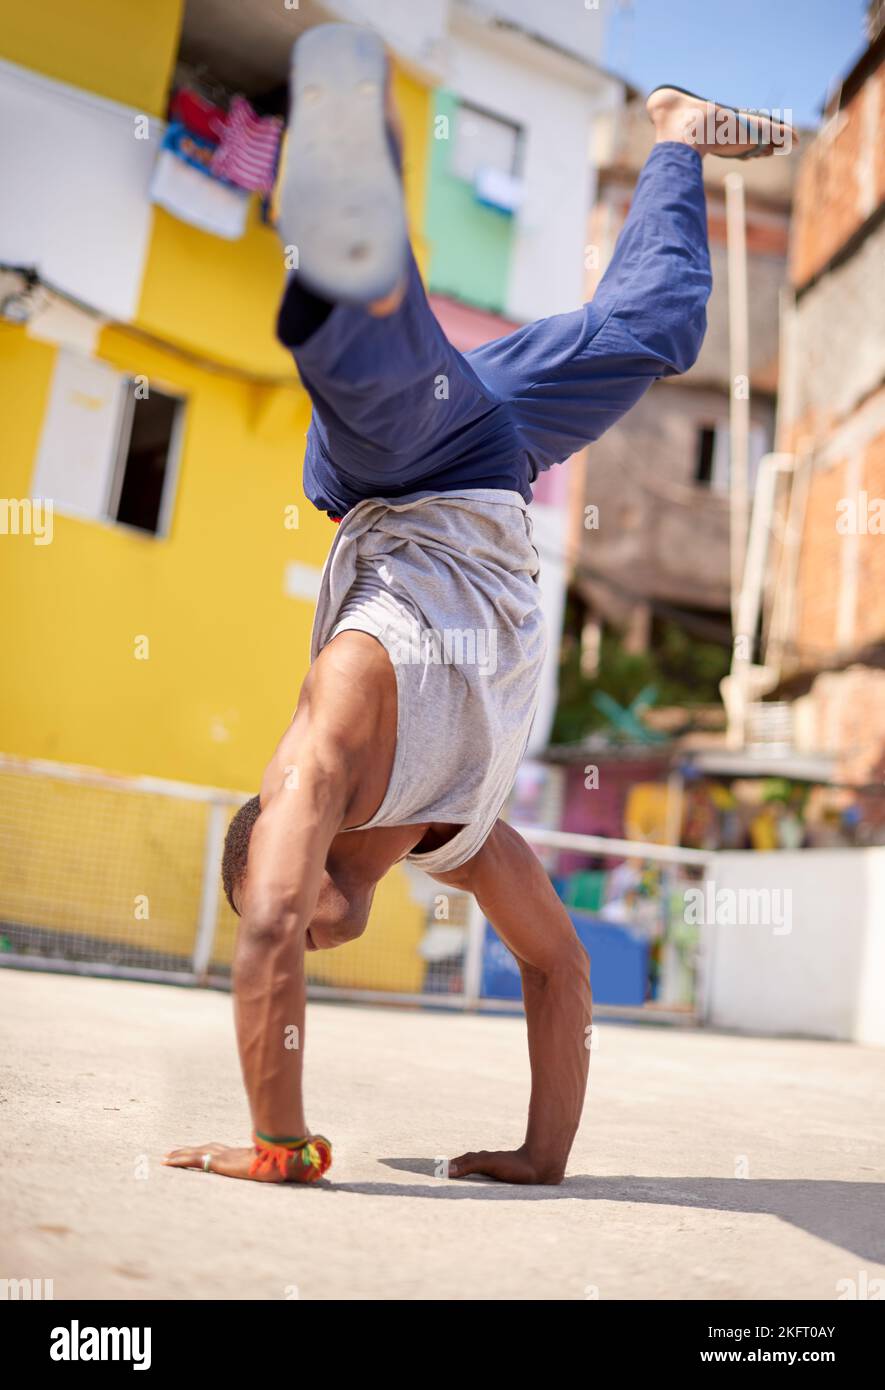 HES ha ottenuto il talento. Inquadratura ad angolo basso di un giovane breakdancer maschile in un ambiente urbano. Foto Stock